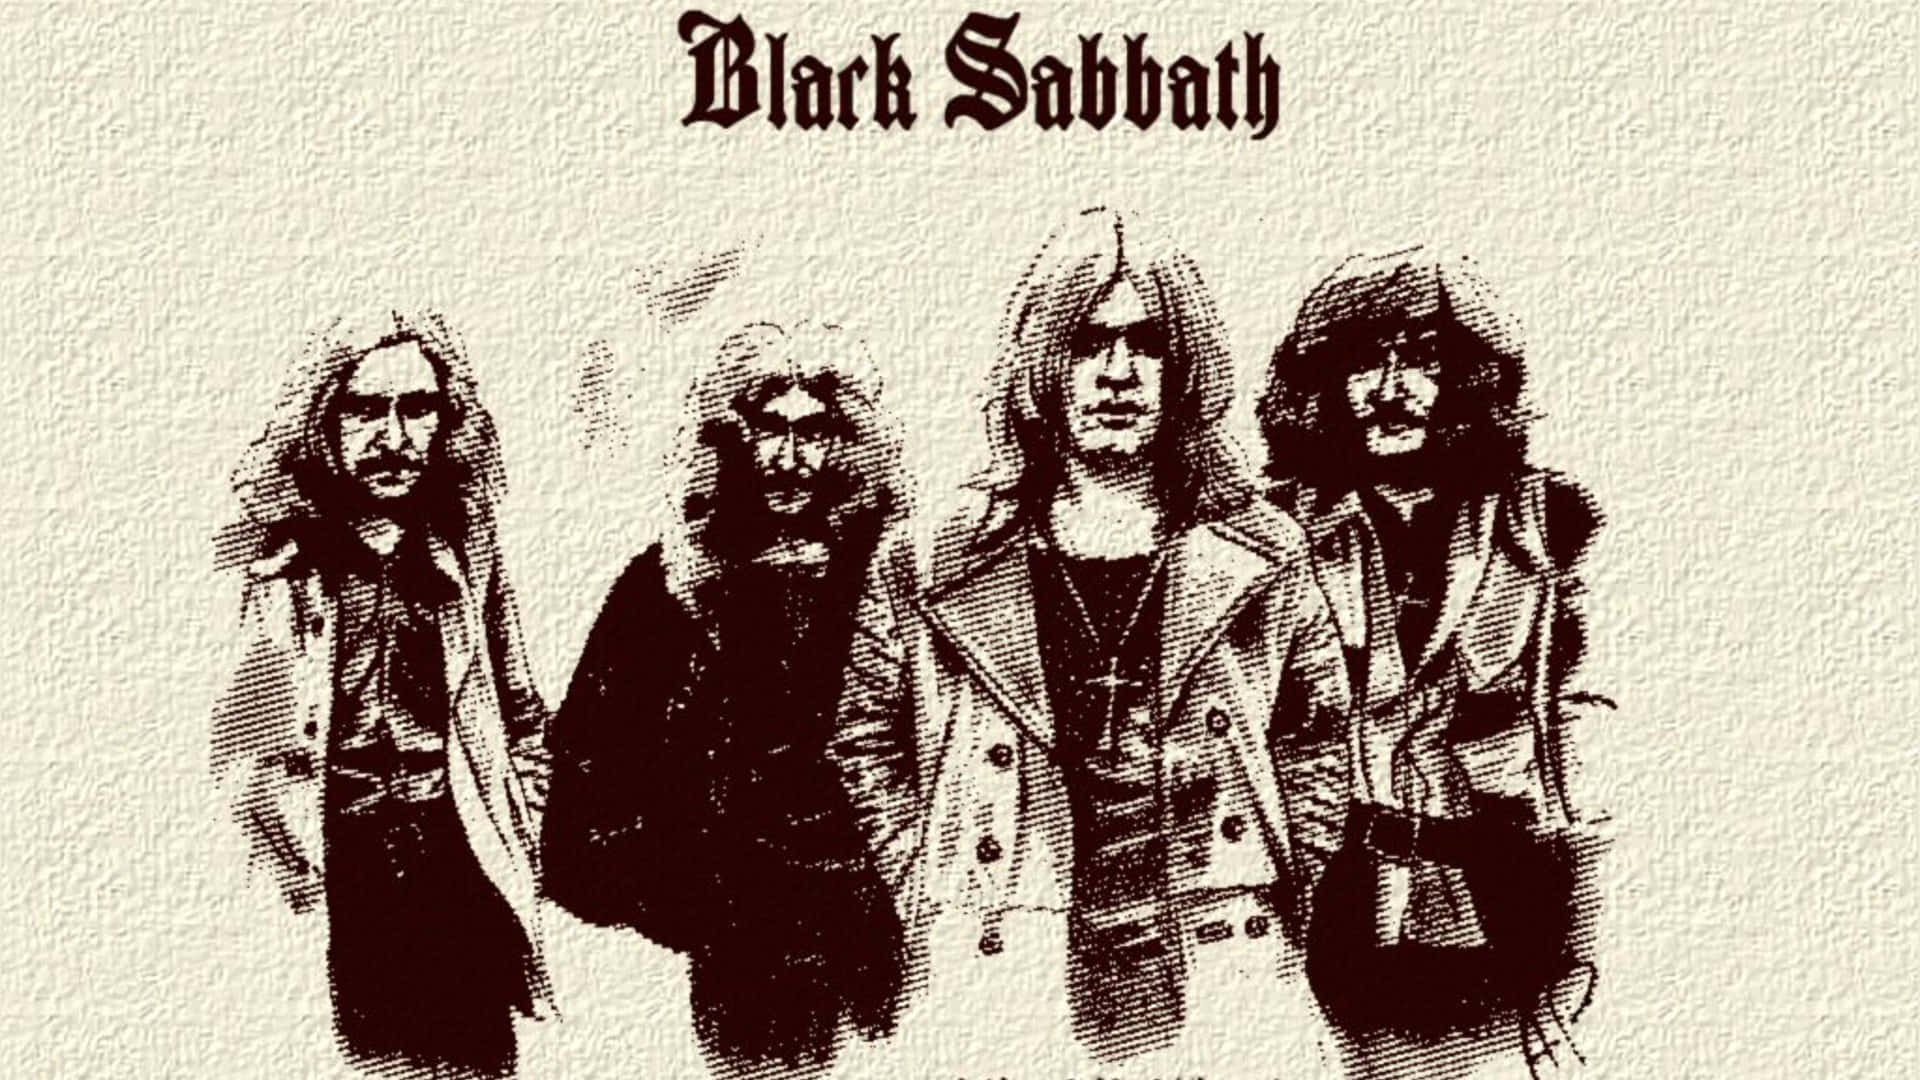 Black Sabbath Classic Band Illustration Wallpaper